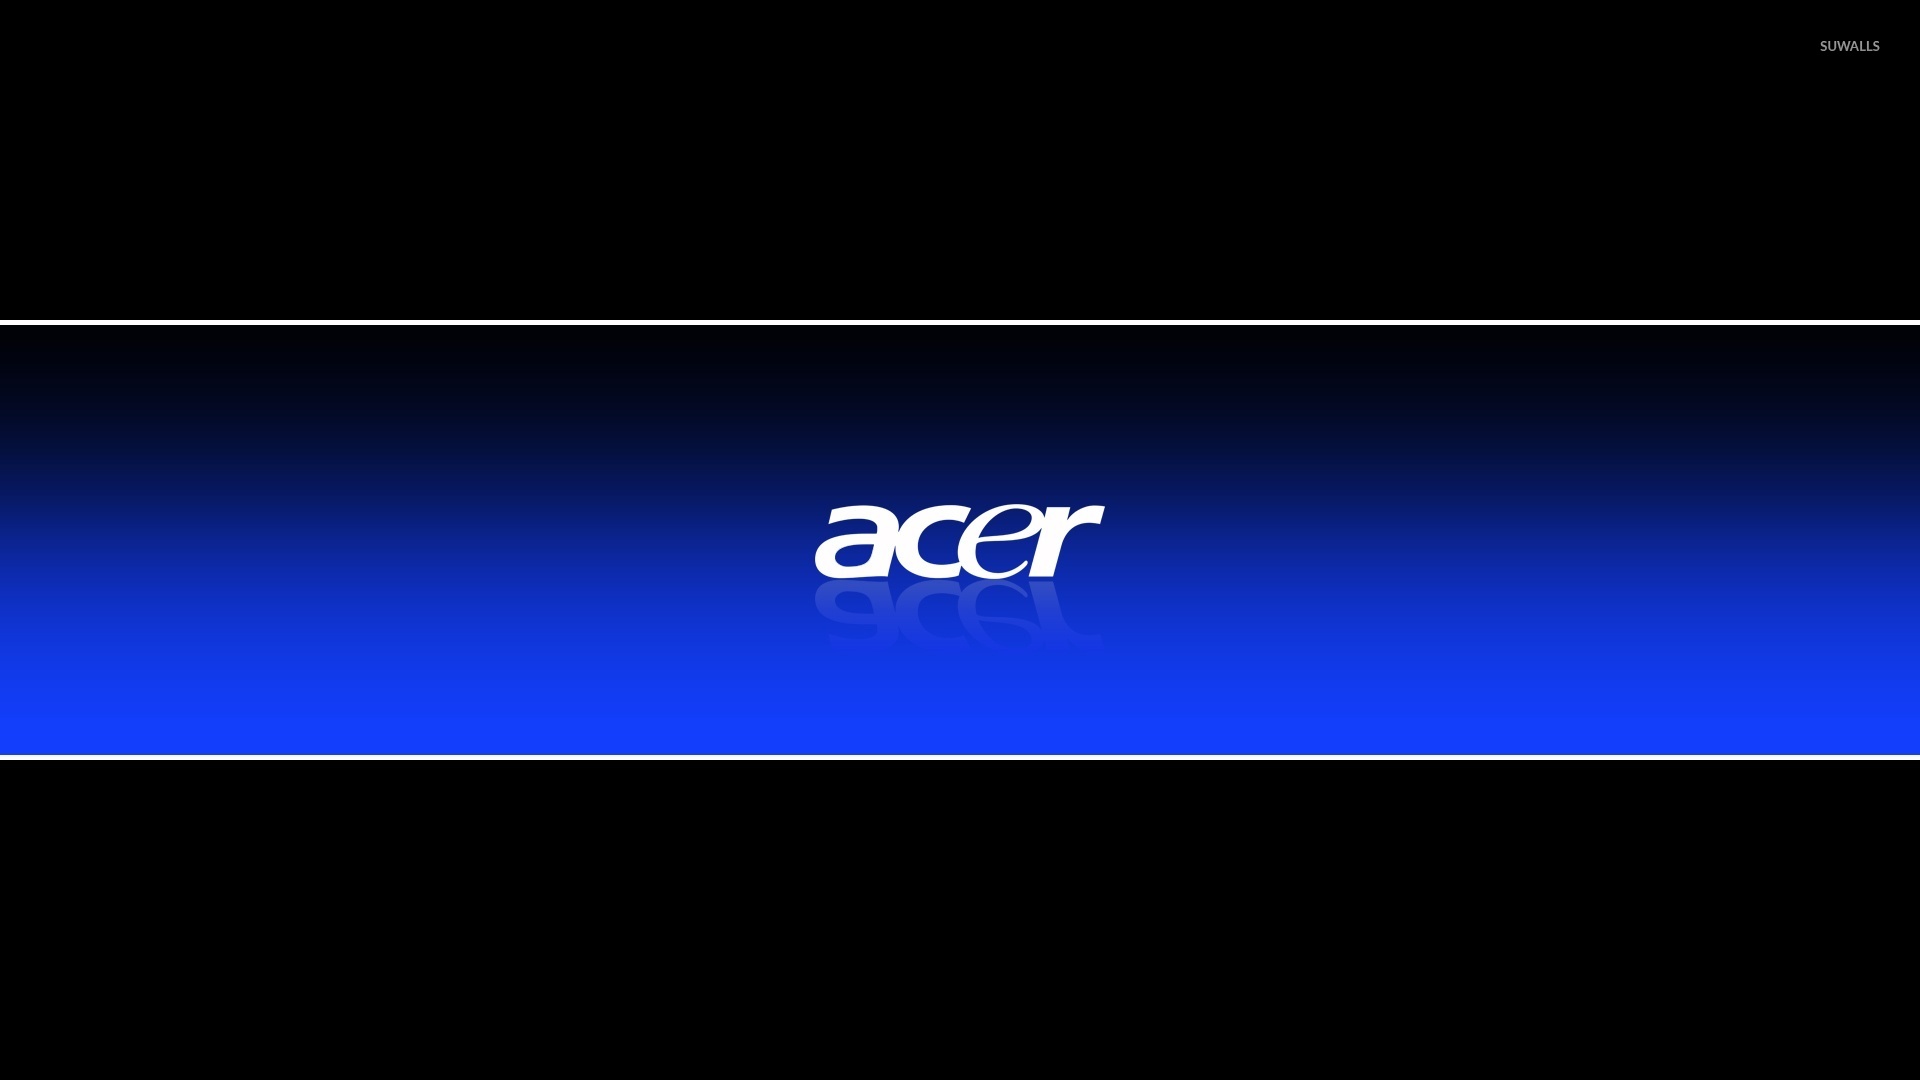 acer logo wallpaper #20